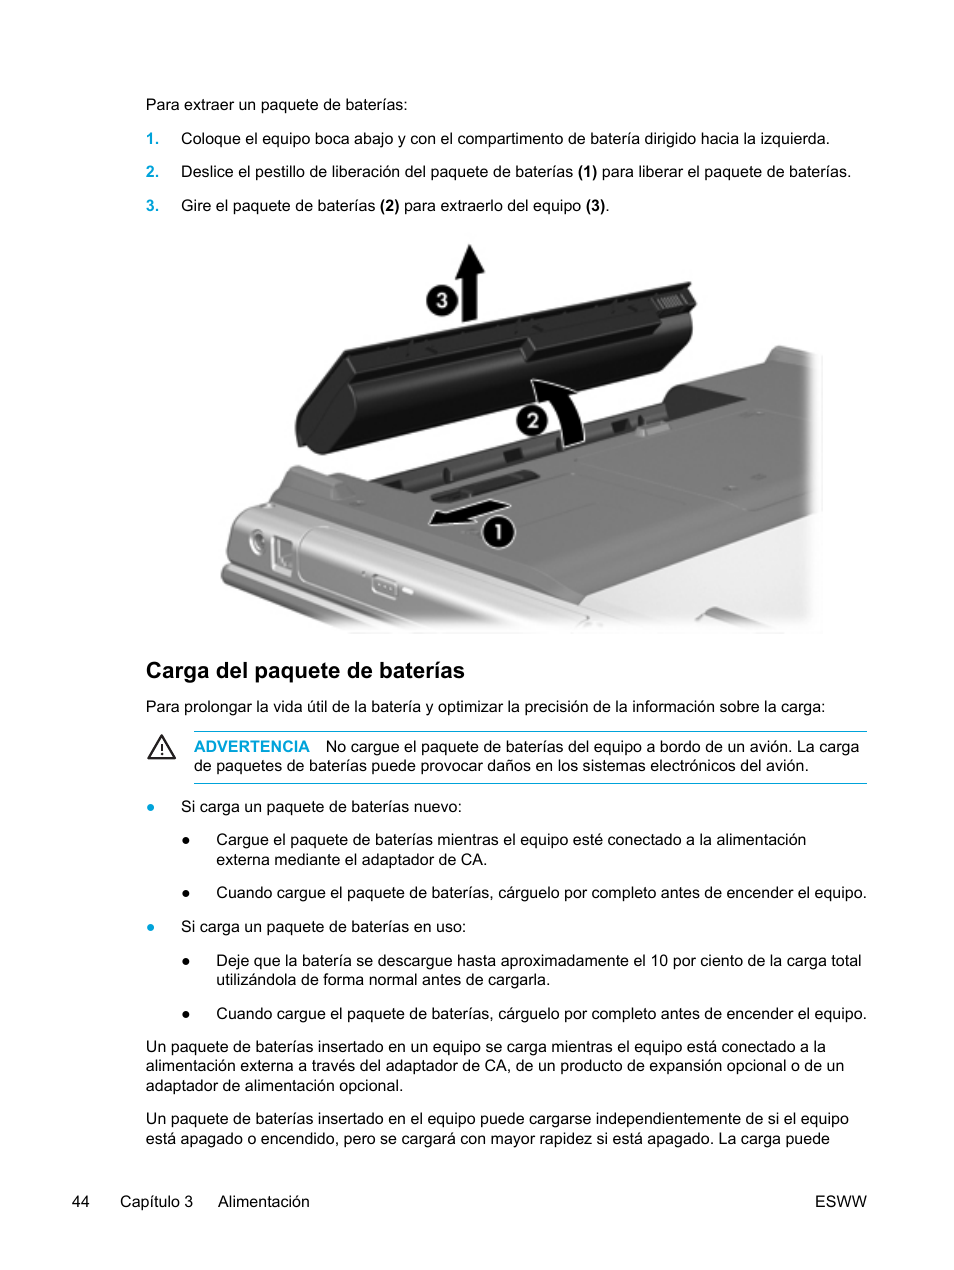 Carga del paquete de baterías | HP PC Portátil HP Pavilion dv5058ea Manual del usuario | Página 54 / 224